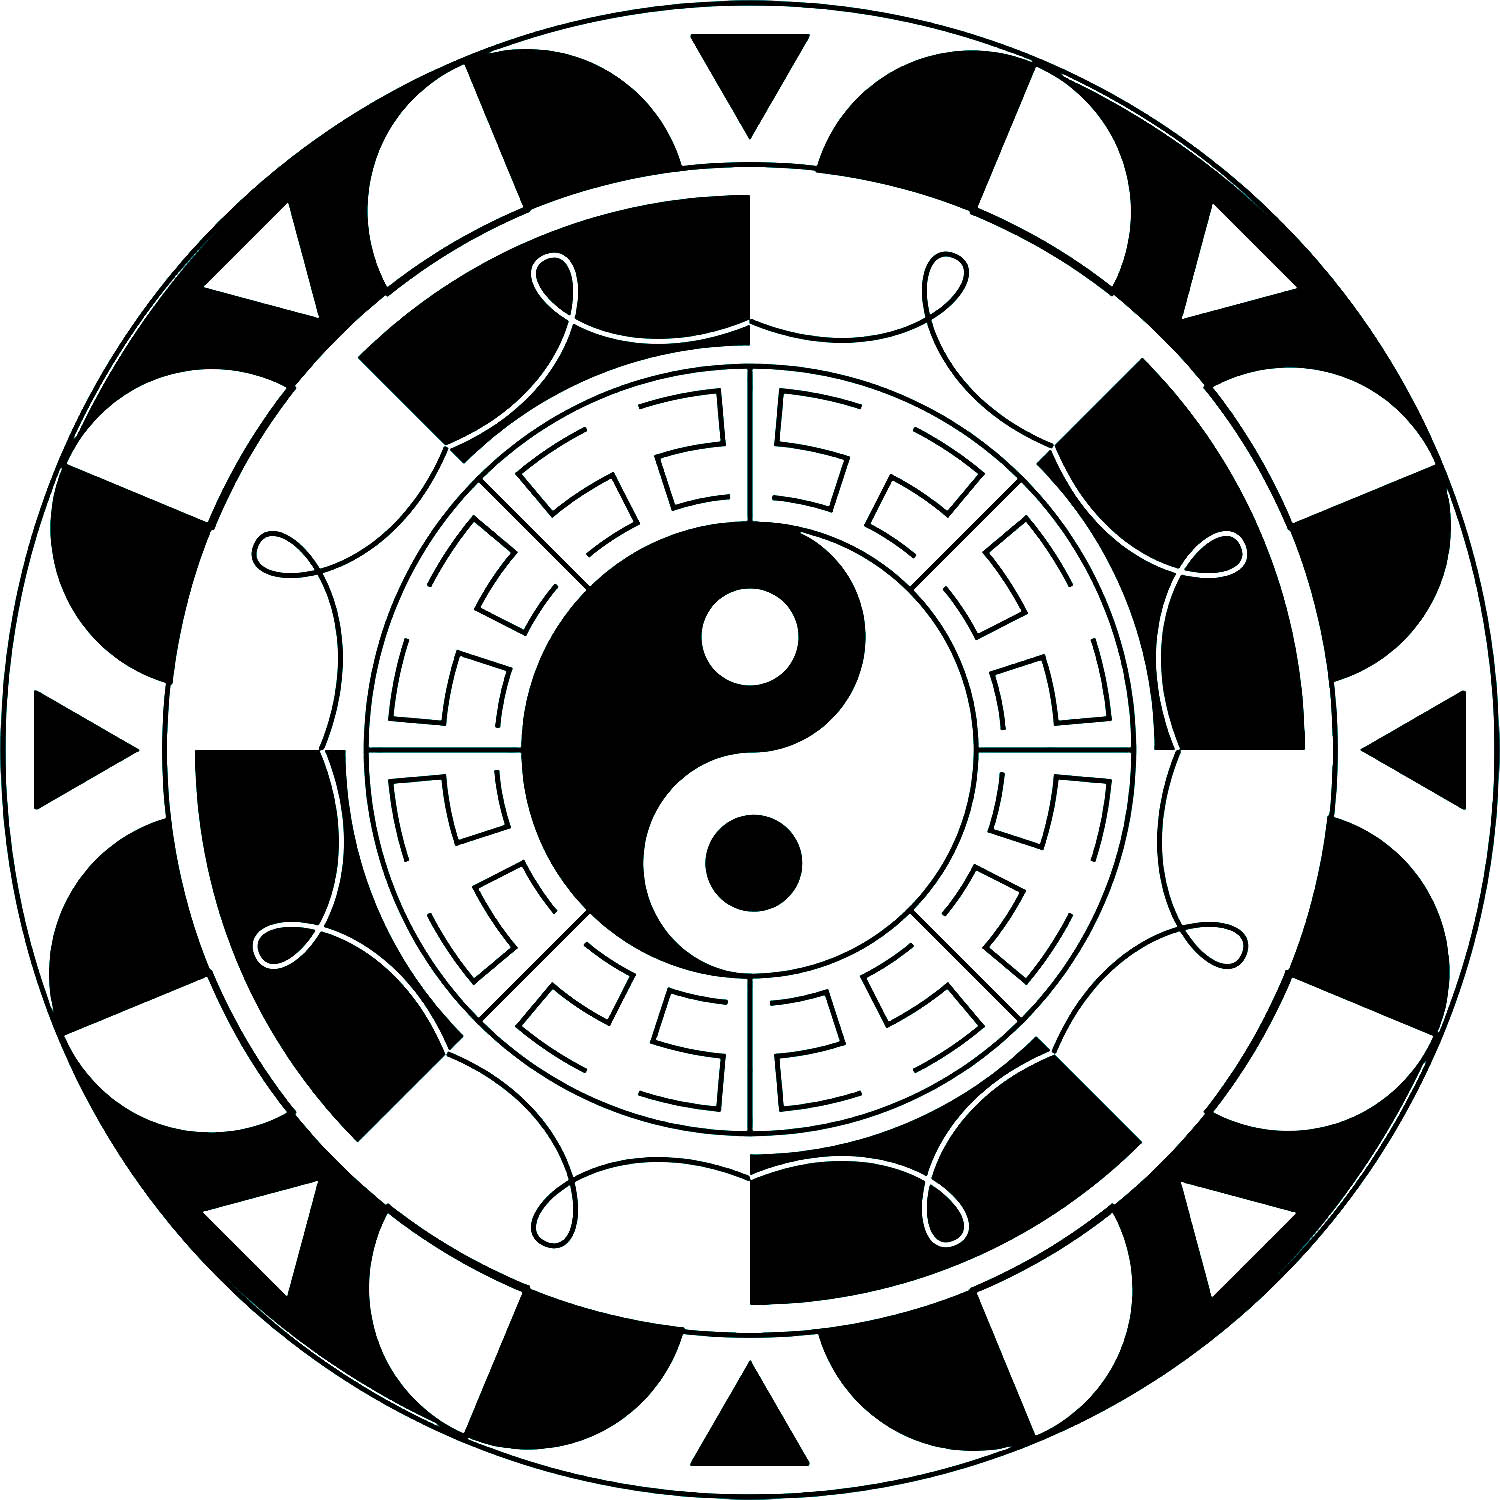 Yin & Yang é um antigo símbolo chinês que representa a natureza dual de coisas como o claro e o escuro, o bem e o mal, o positivo e o negativo.